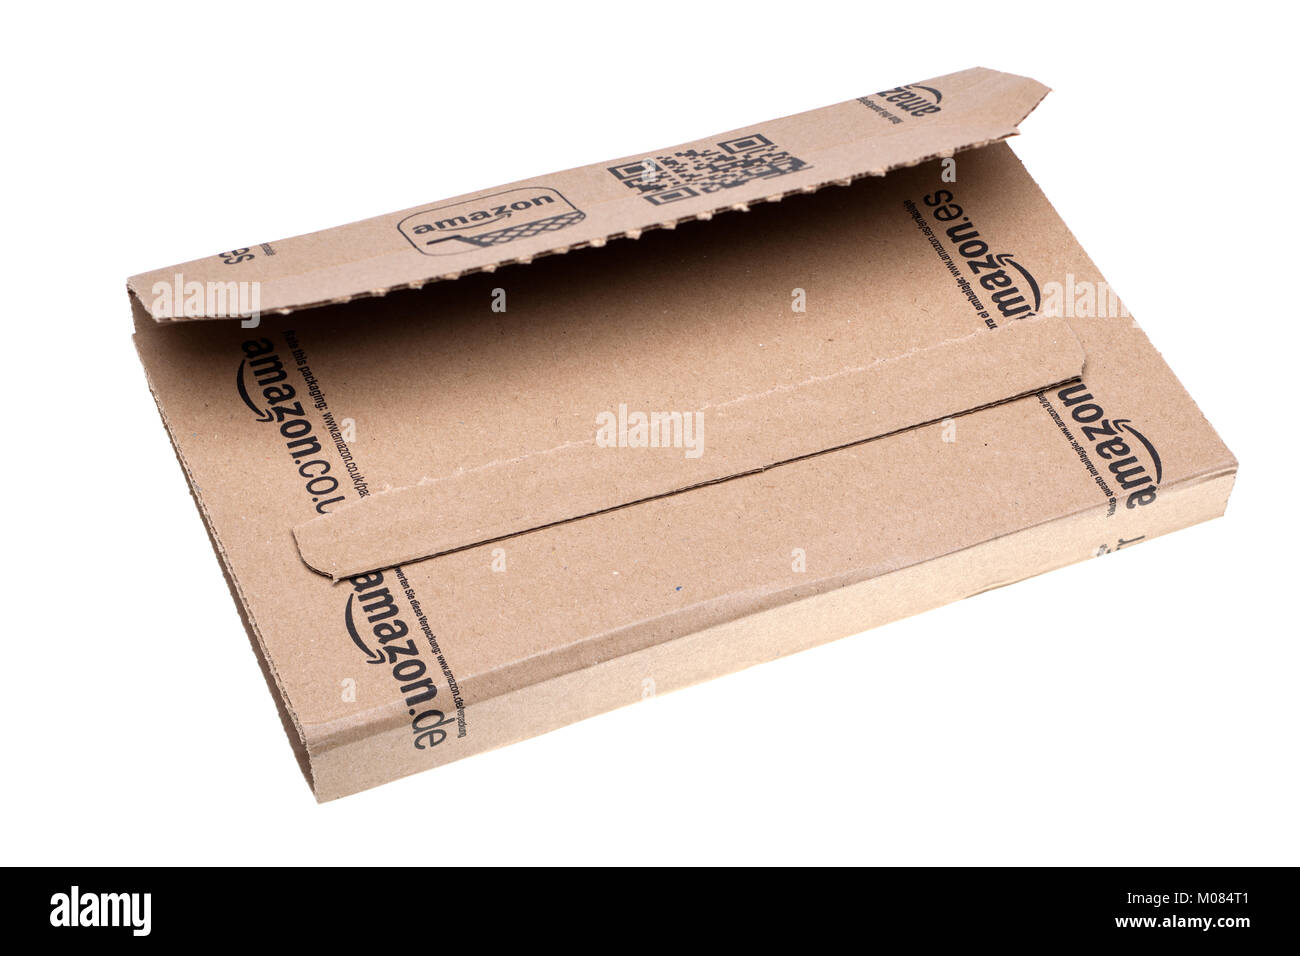 Amazon piccola confezione aperta Foto stock - Alamy